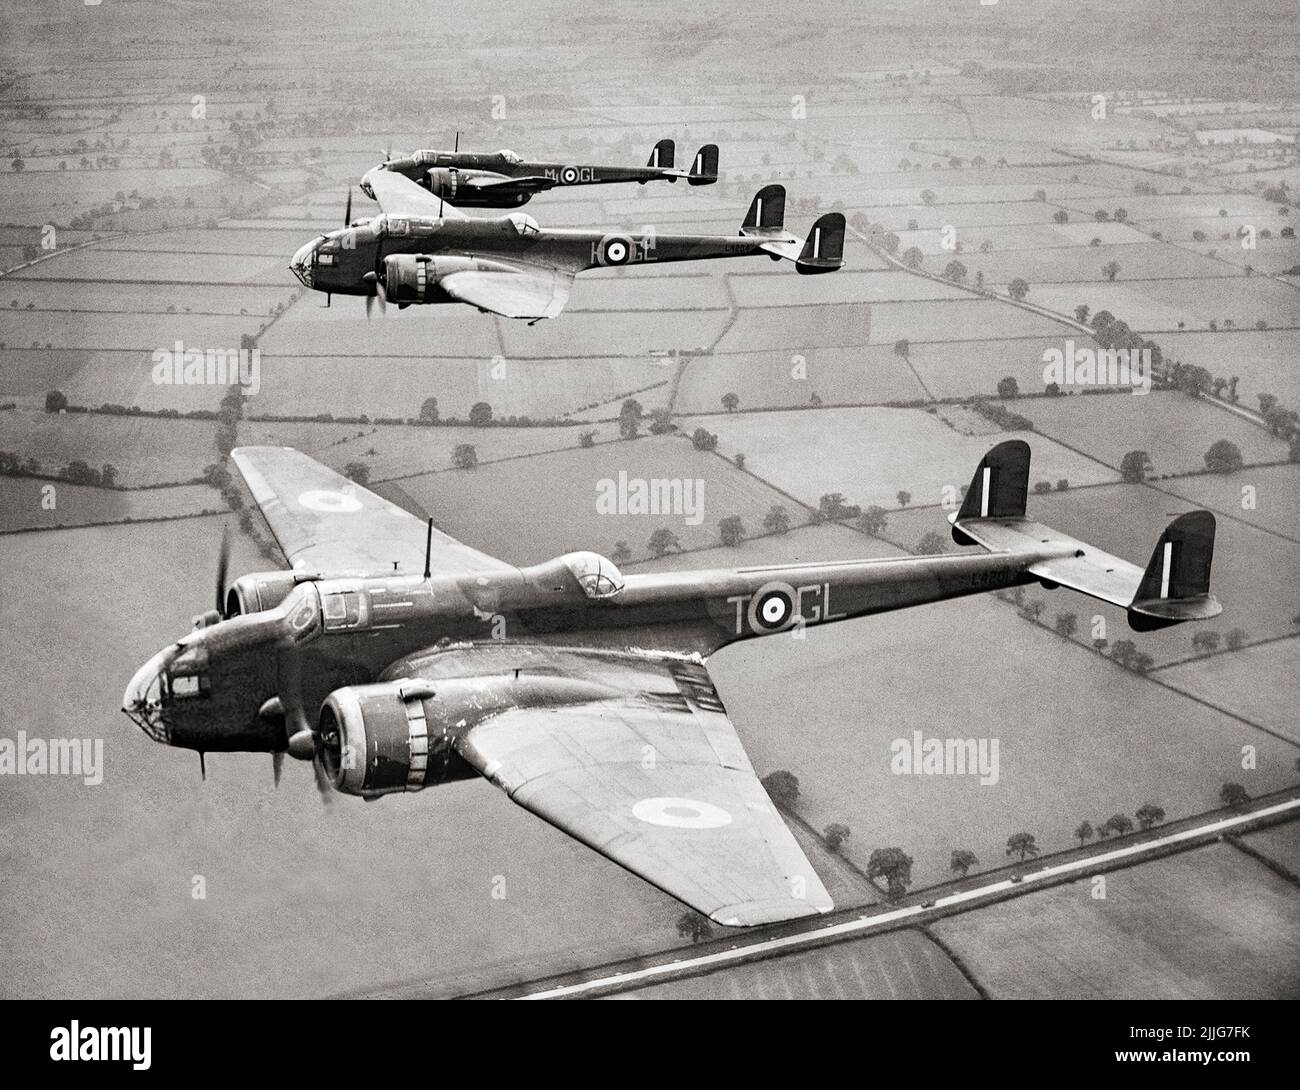 Handley page hampsens de l'unité de formation opérationnelle n° 14 (OTU), basée à Cottesmore, le 23 juillet 1940. Bombardier moyen à deux moteurs britannique, il a été exploité par la Royal Air Force dans le cadre du trio de gros bombardiers à deux moteurs acquis pour la RAF, rejoignant l'Armstrong Whitworth Whitley et Vickers Wellington. Il a servi dans les premières étapes de la Seconde Guerre mondiale, portant le plus lourd tribut de la première guerre de bombardement sur l'Europe, participant à la première nuit raid sur Berlin et la première 1 000 bombardiers RAID sur Cologne. Plus tard remplacé par des bombardiers lourds comme l'Avro Lancaster Banque D'Images